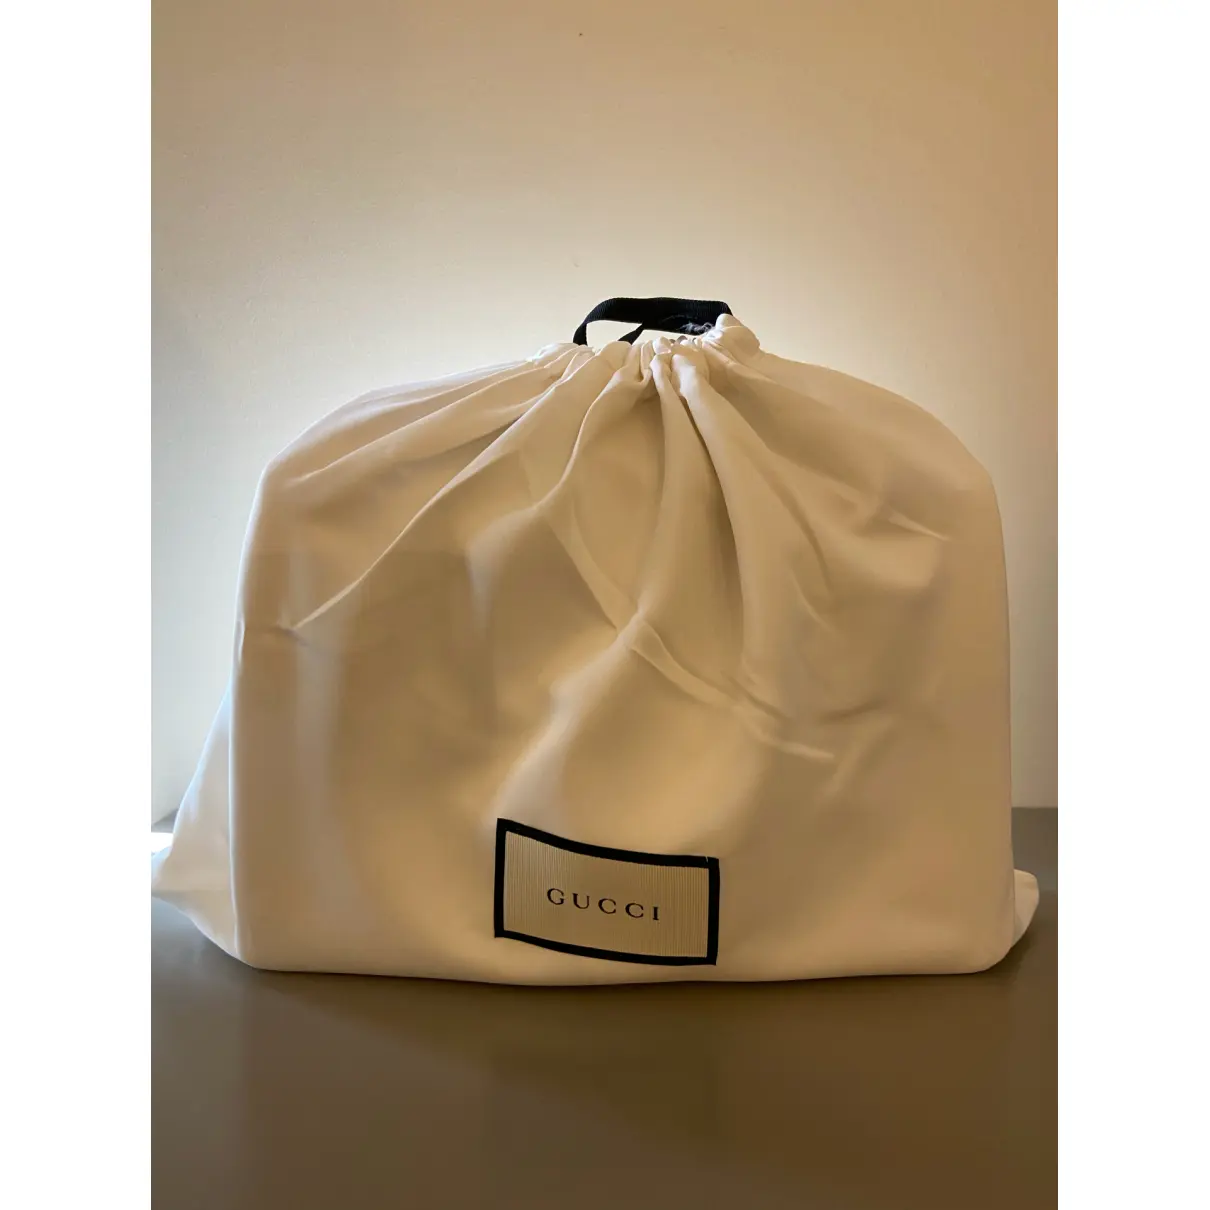 Buy Gucci Sylvie leather handbag online - Vintage